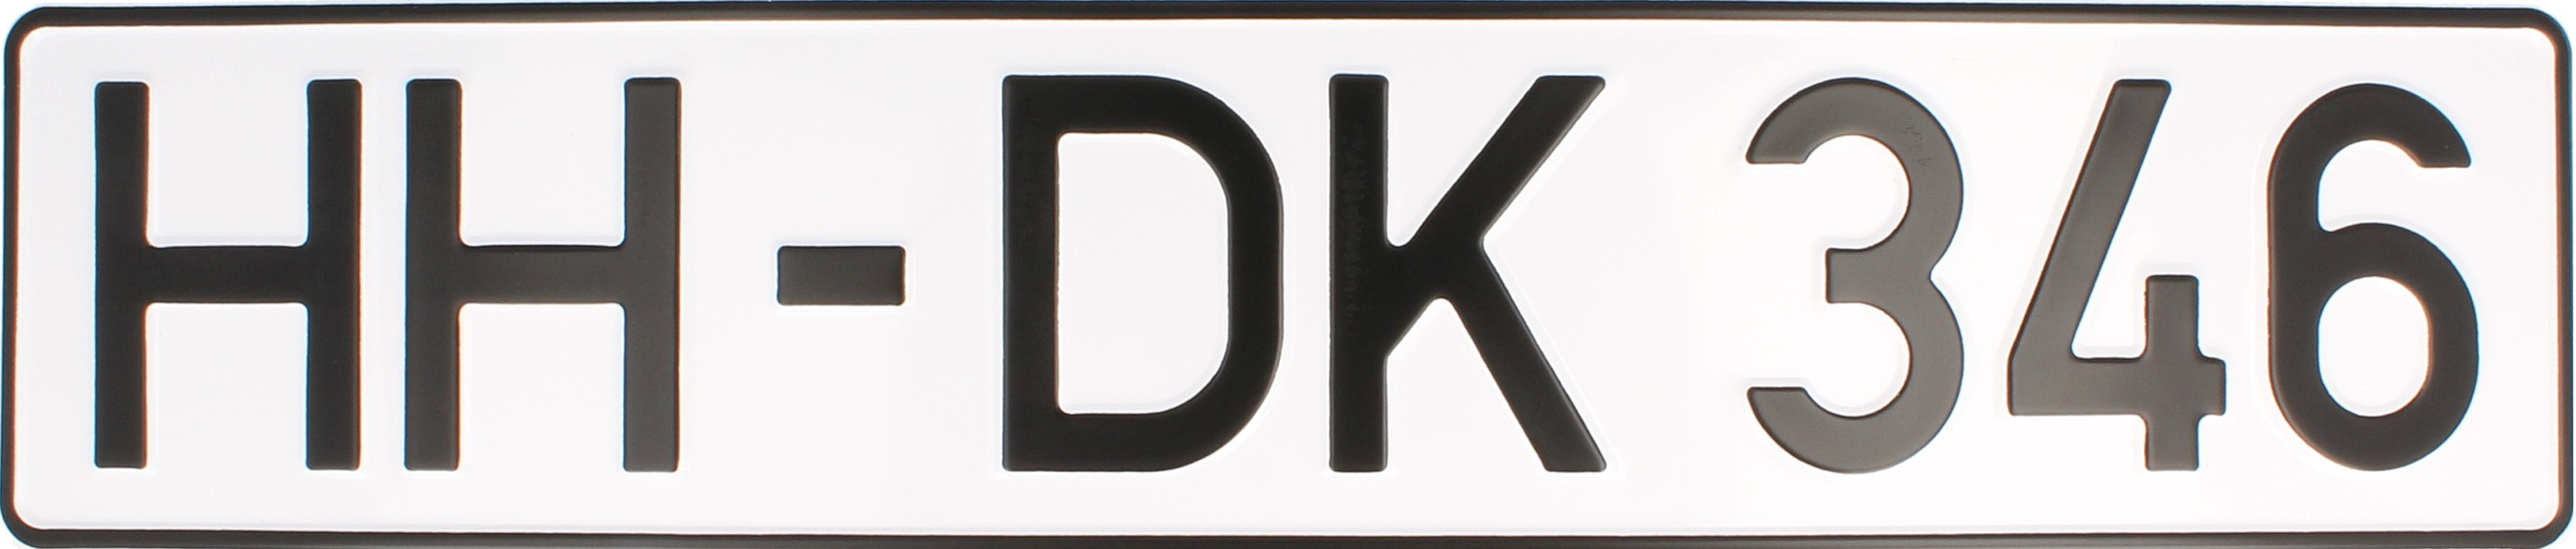 HH-DK346